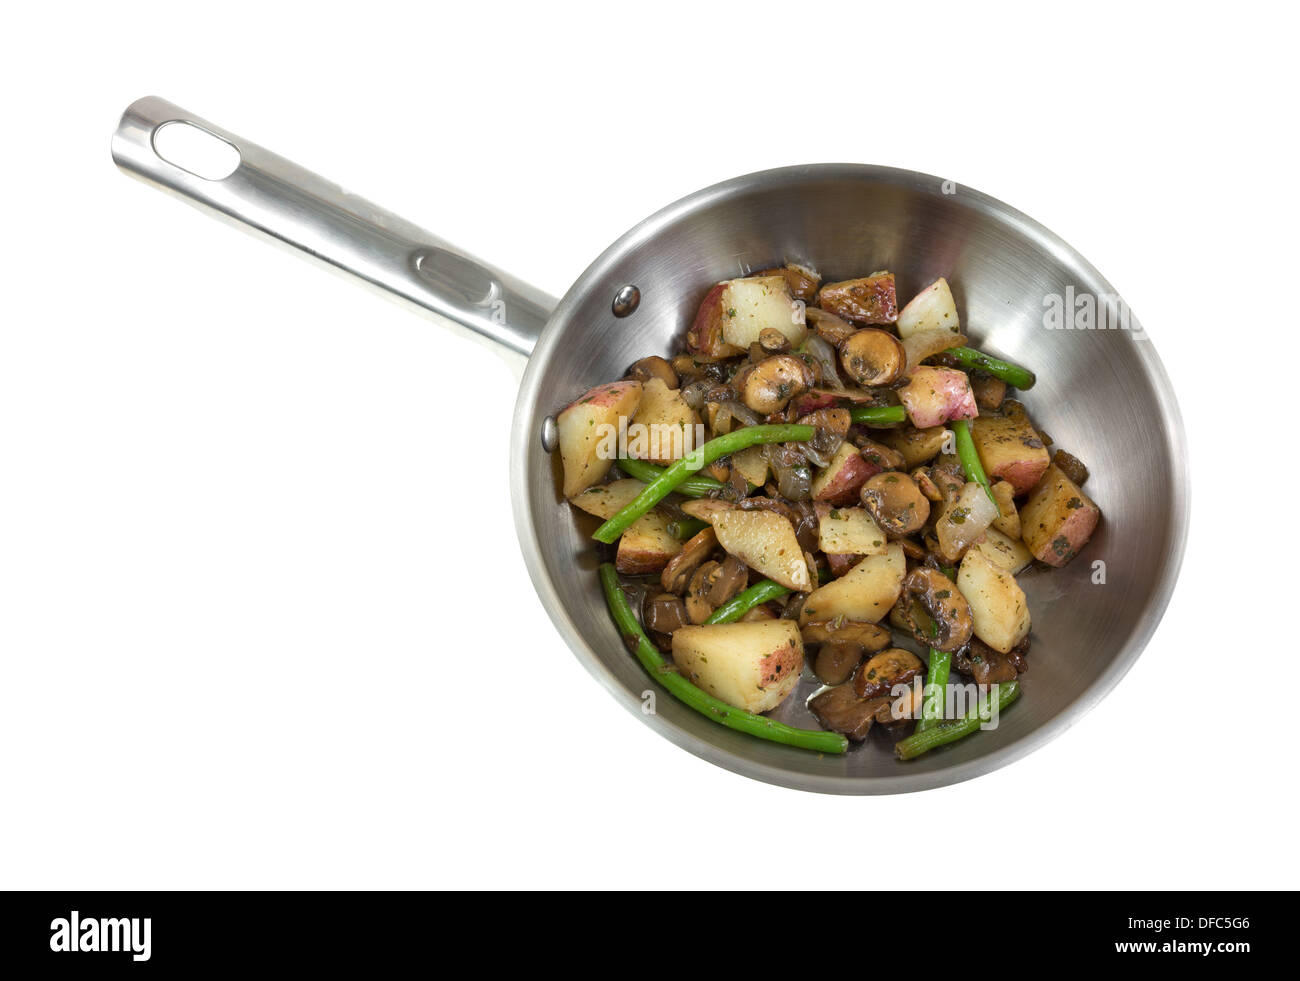 Un poêle en acier inoxydable avec des haricots verts, champignons, oignons et pommes de terre rouge à l'huile d'olive sur un fond blanc. Banque D'Images